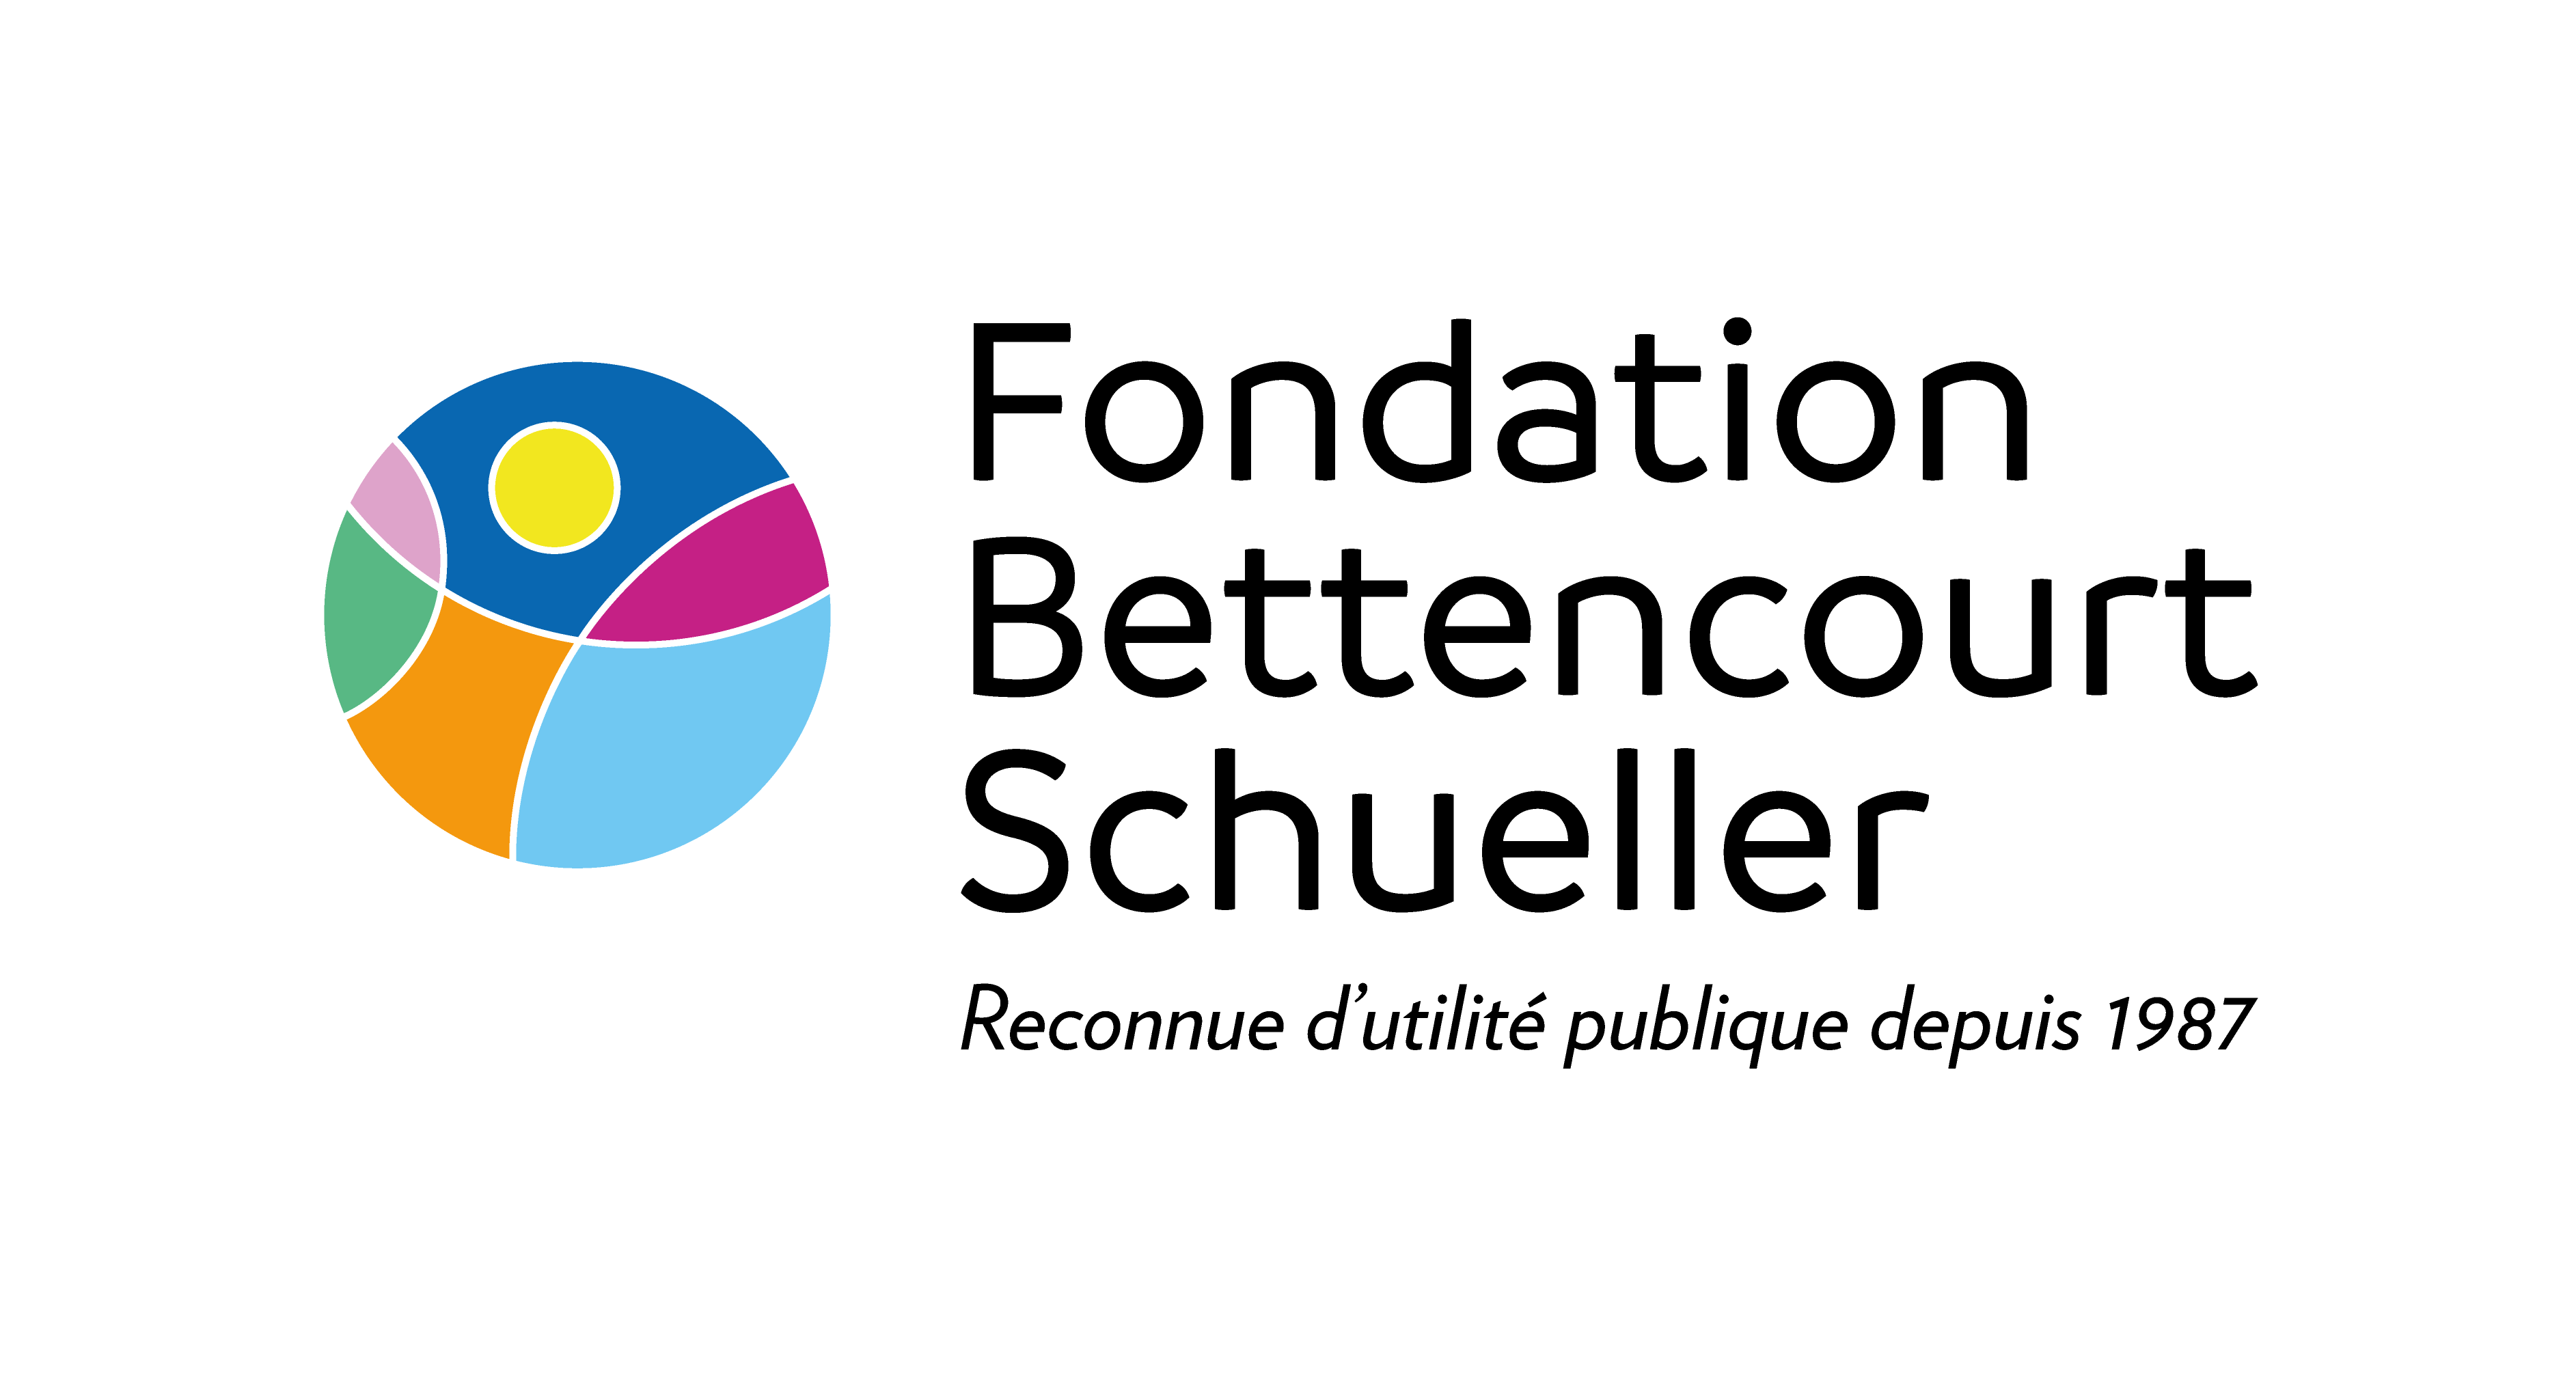 Fondation_Bettencourt_Schueller_logo-CMJN.png